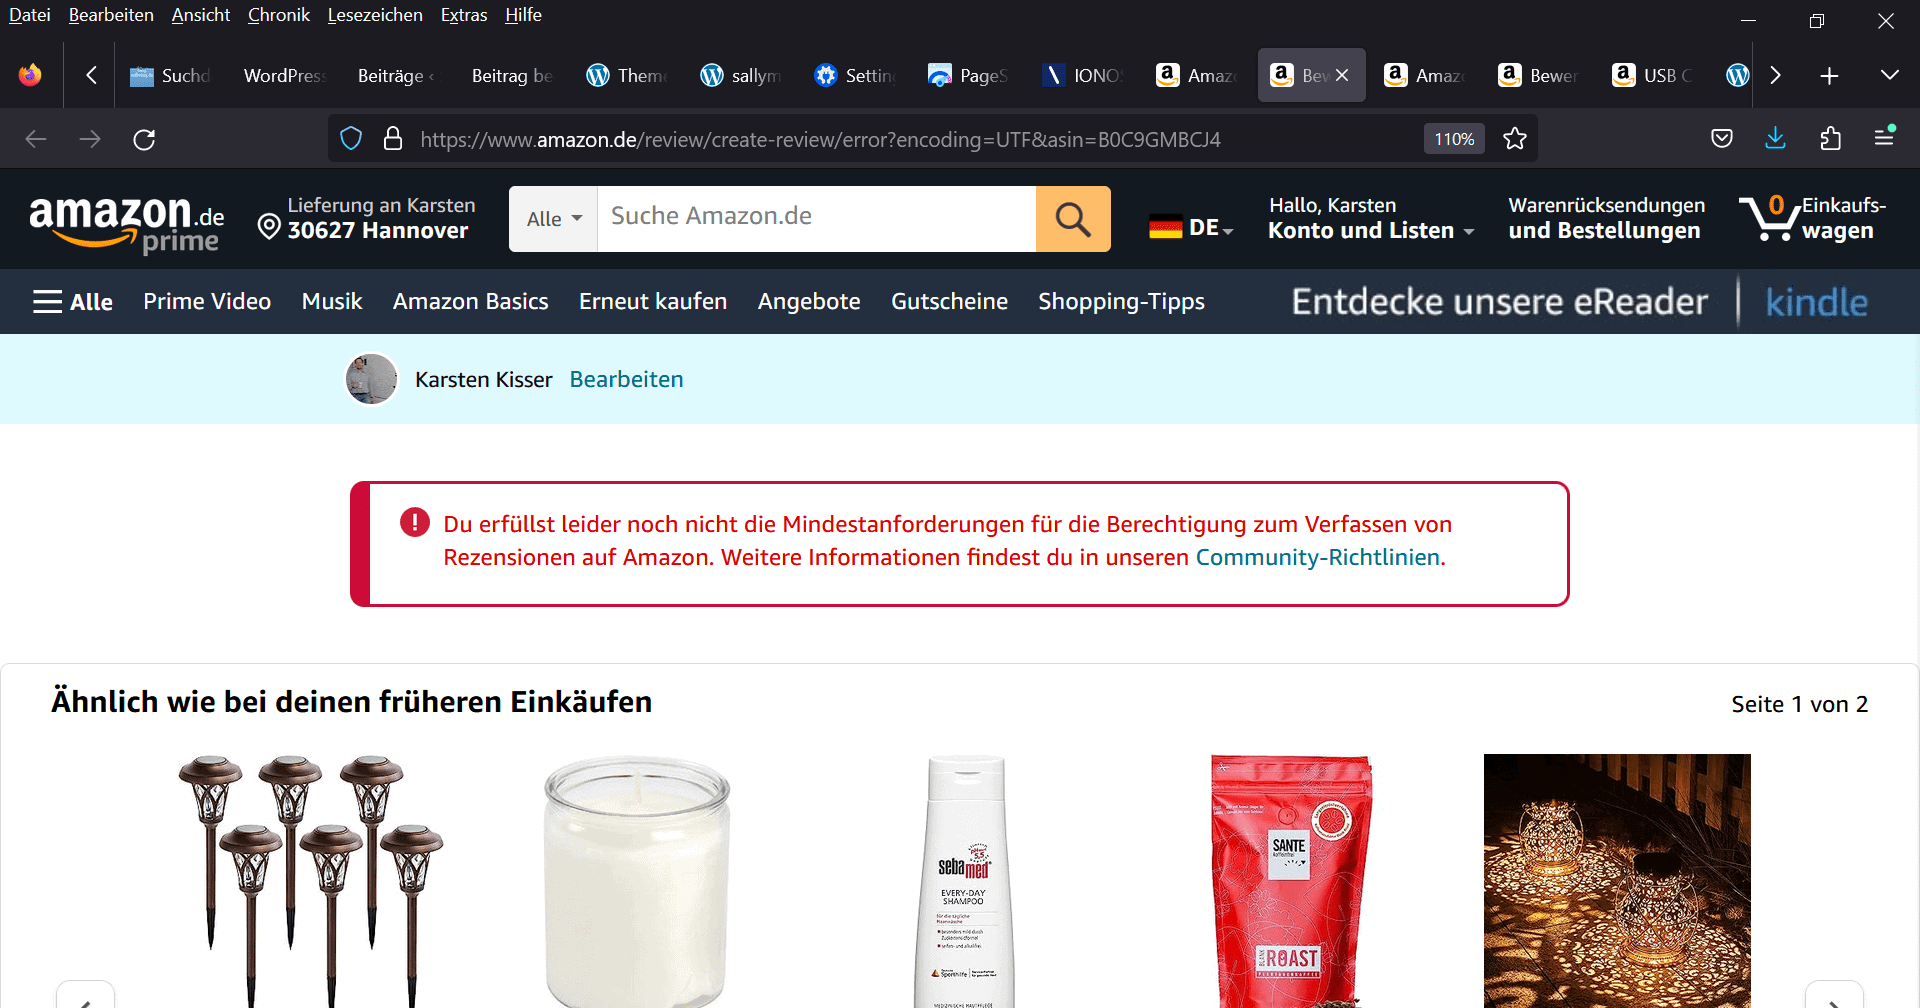 Amazon-Fehlermeldung, dass ich noch nicht die Mindestanfoderungen zum Erstellen von Rezensionen erfülle.